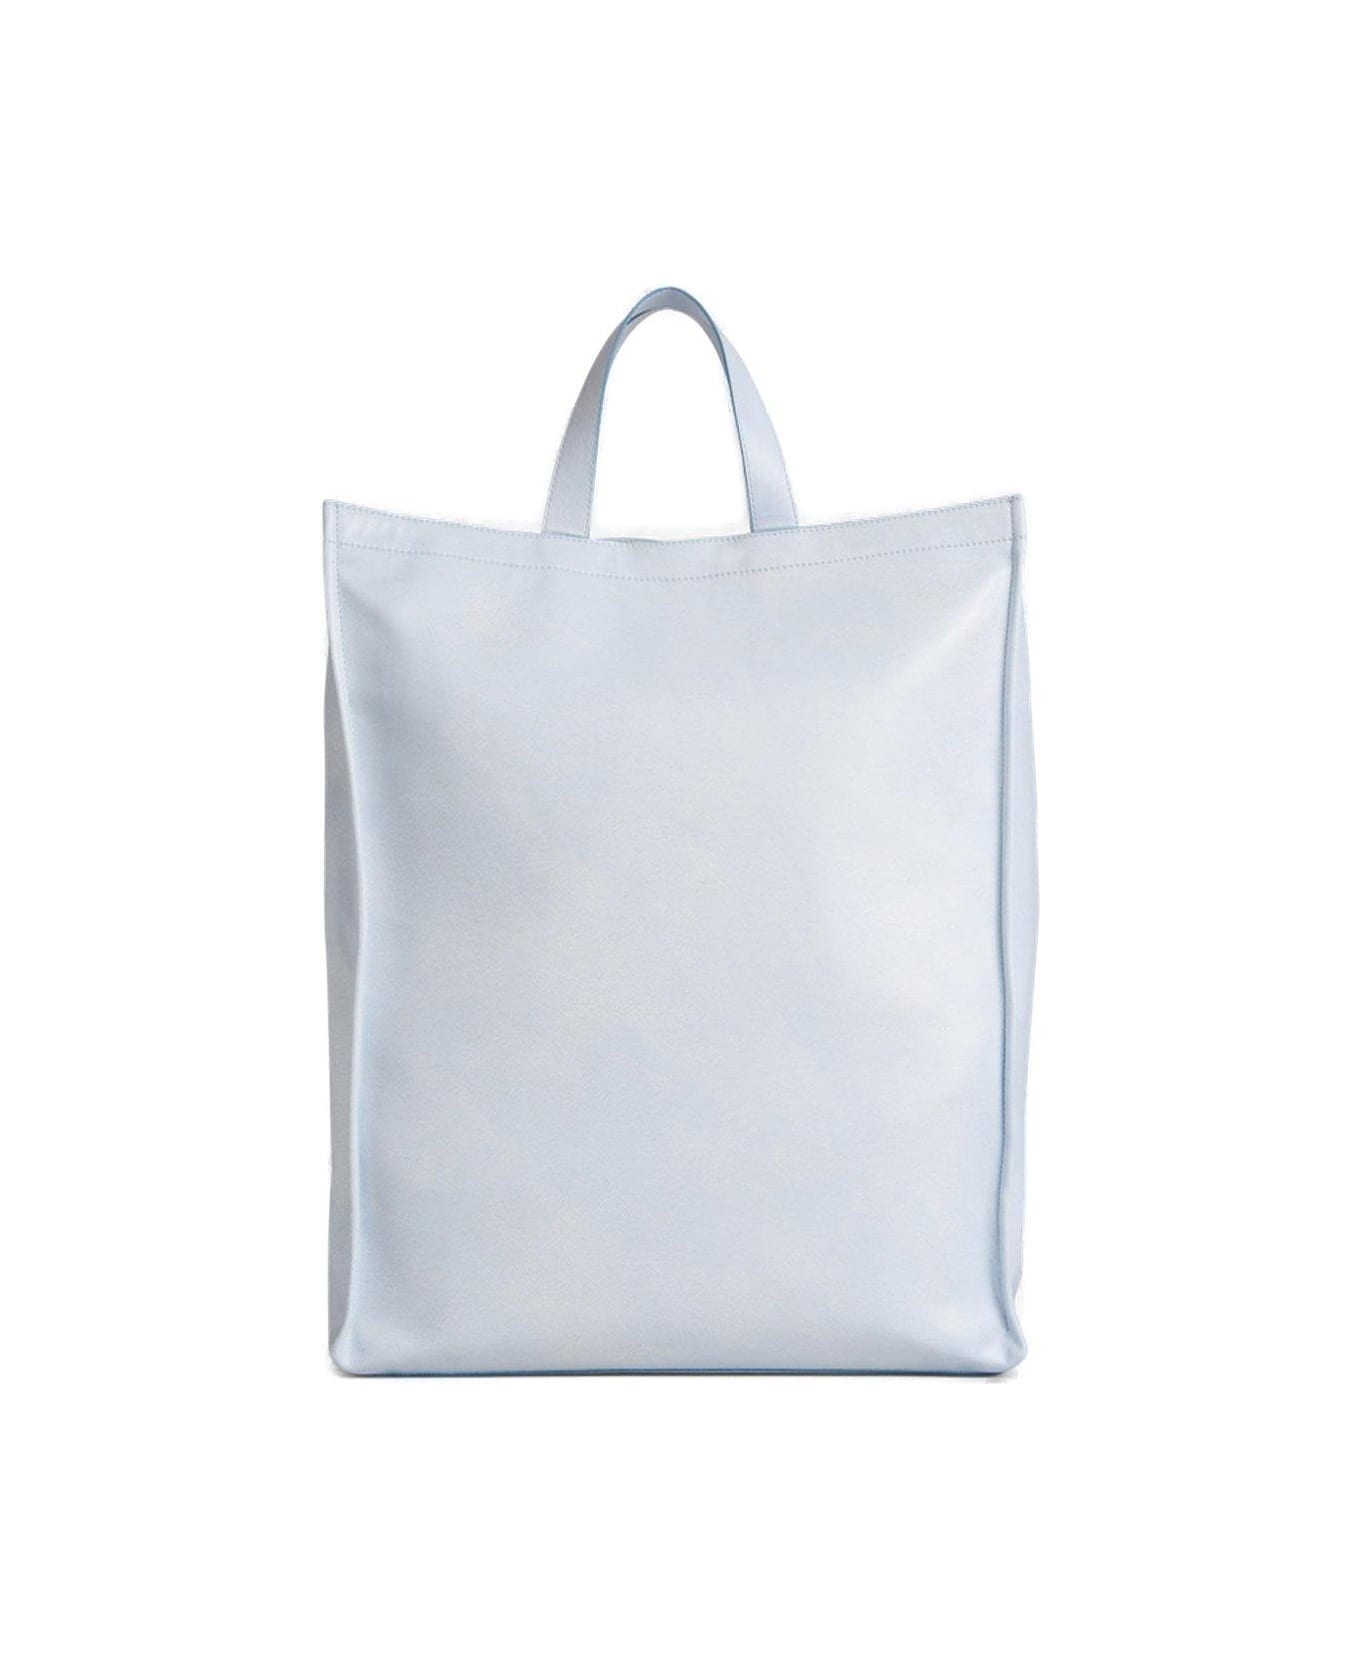 Acne Studios Karen Kilimnik Printed Tote Bag - Ahx White/grey トートバッグ